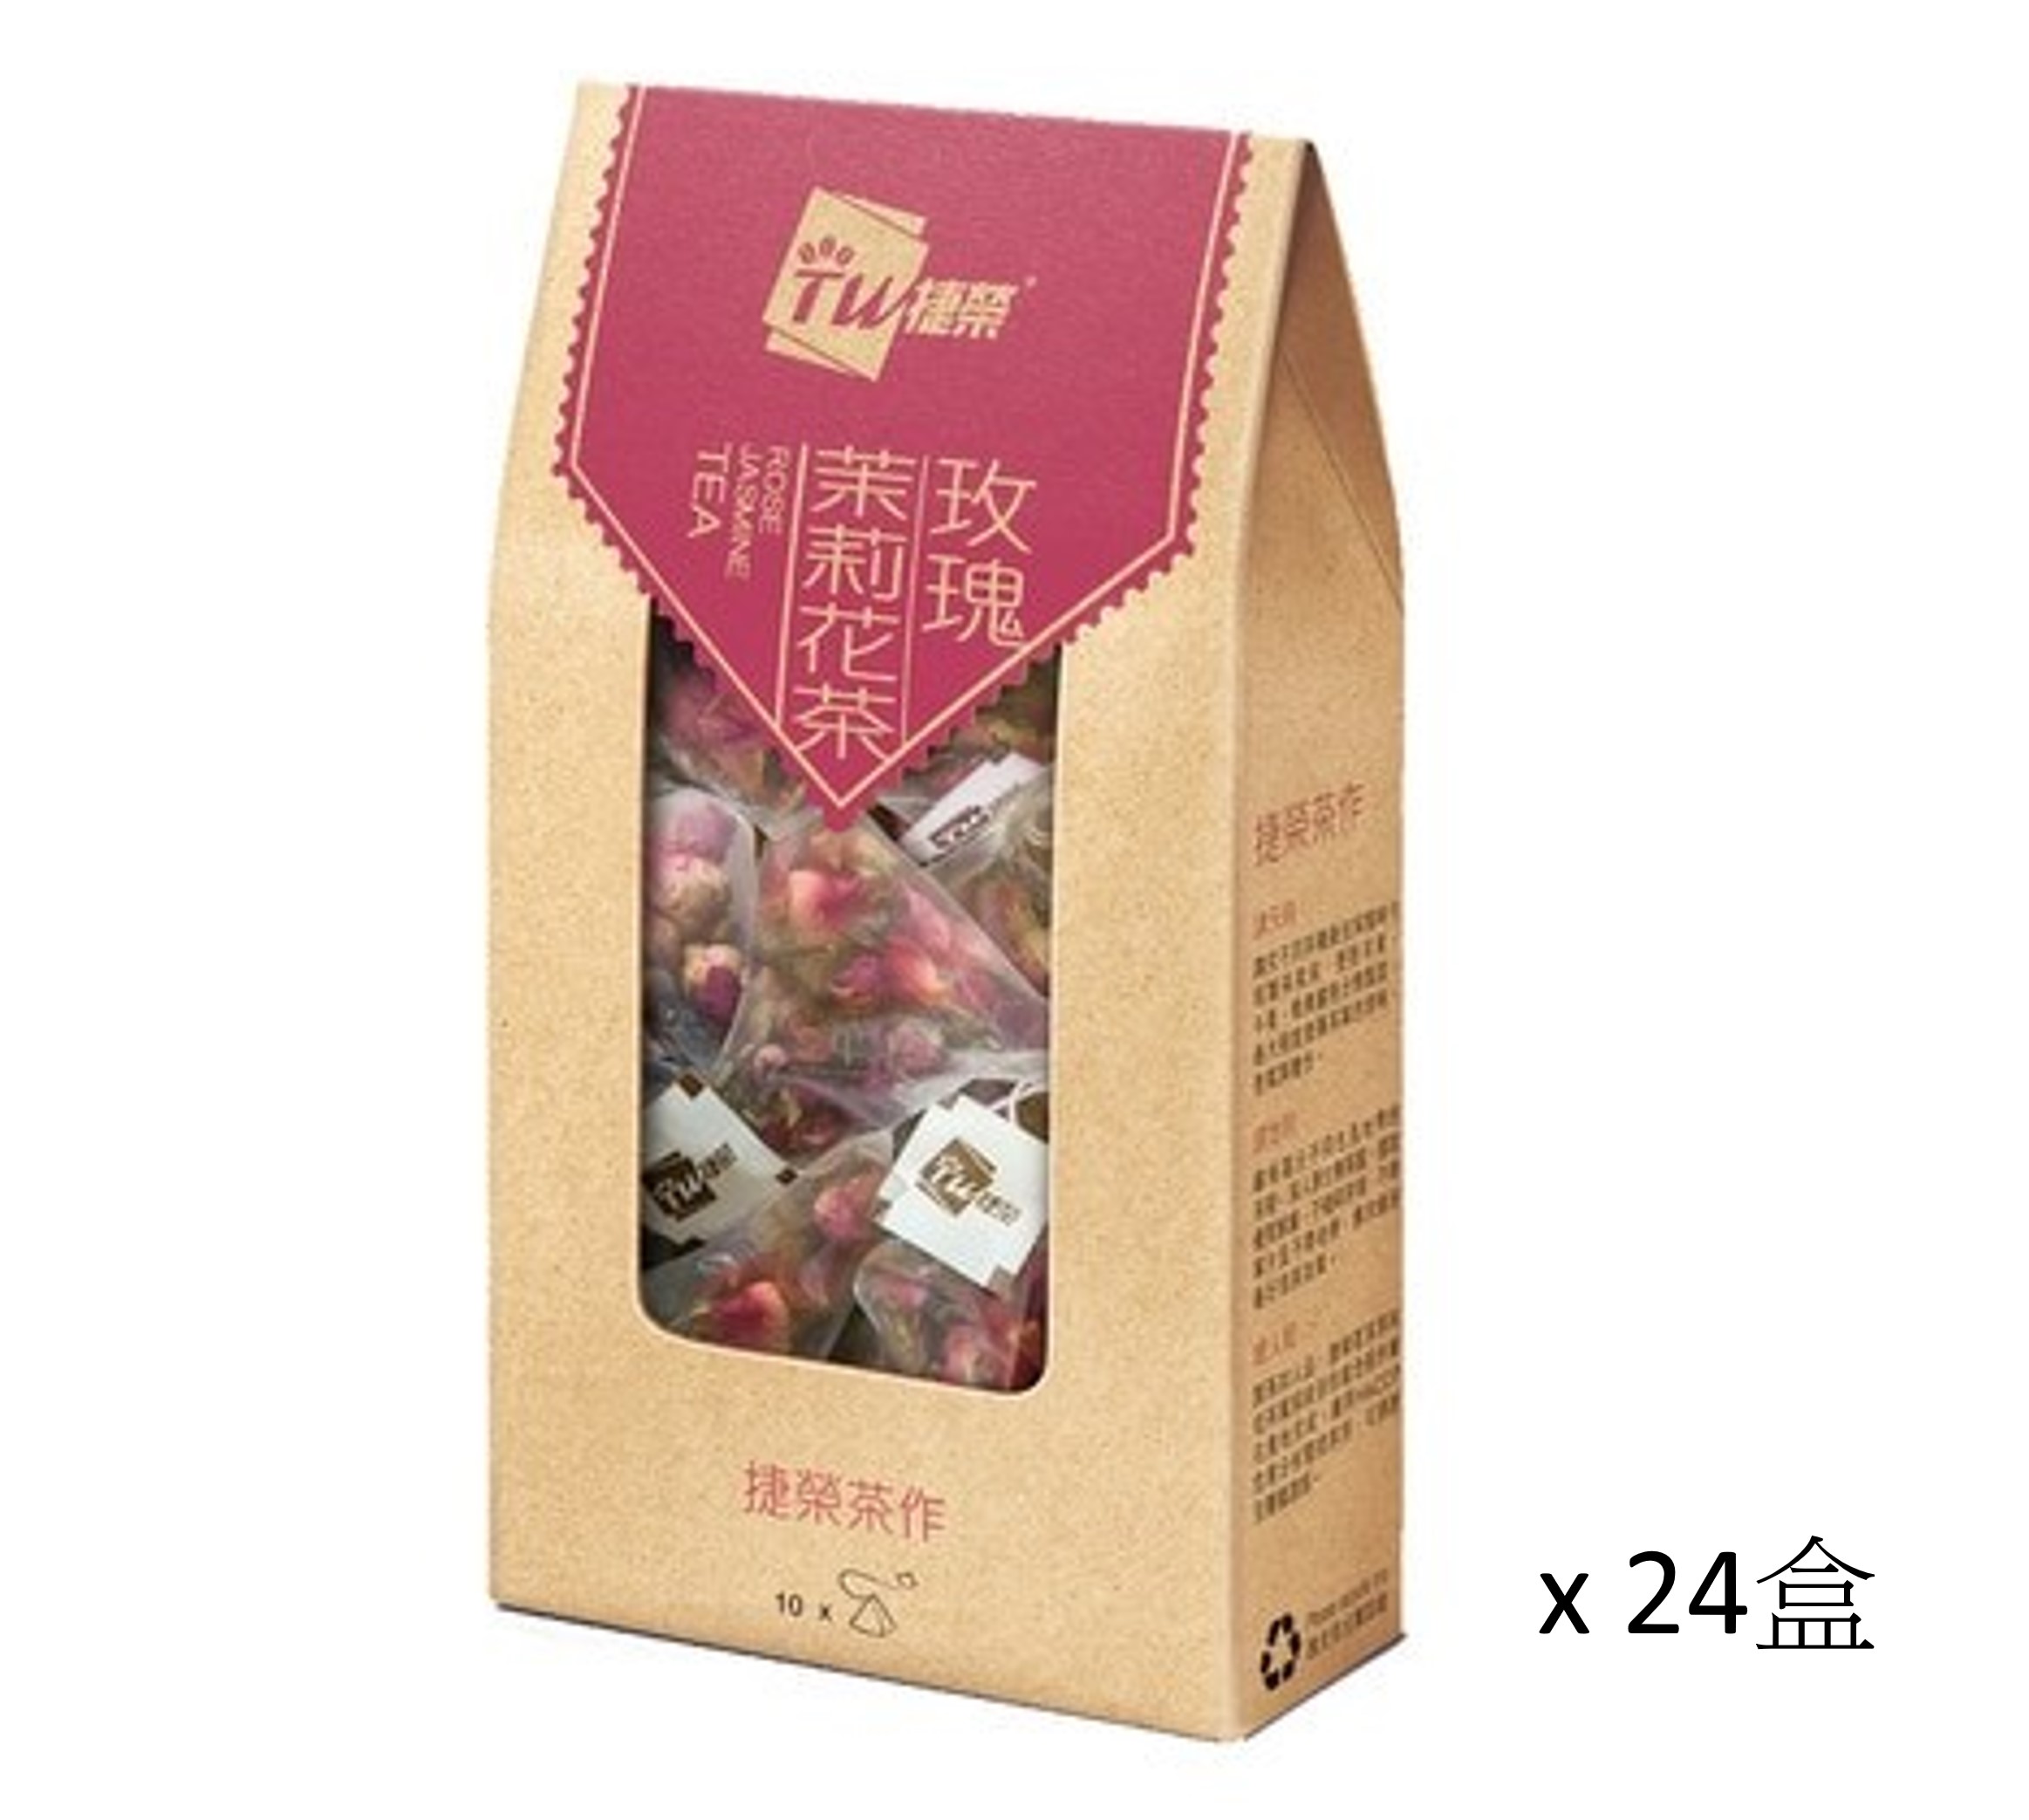 捷榮玫瑰茉莉花茶原葉茶包 2.5克 x 10包 x (24盒)